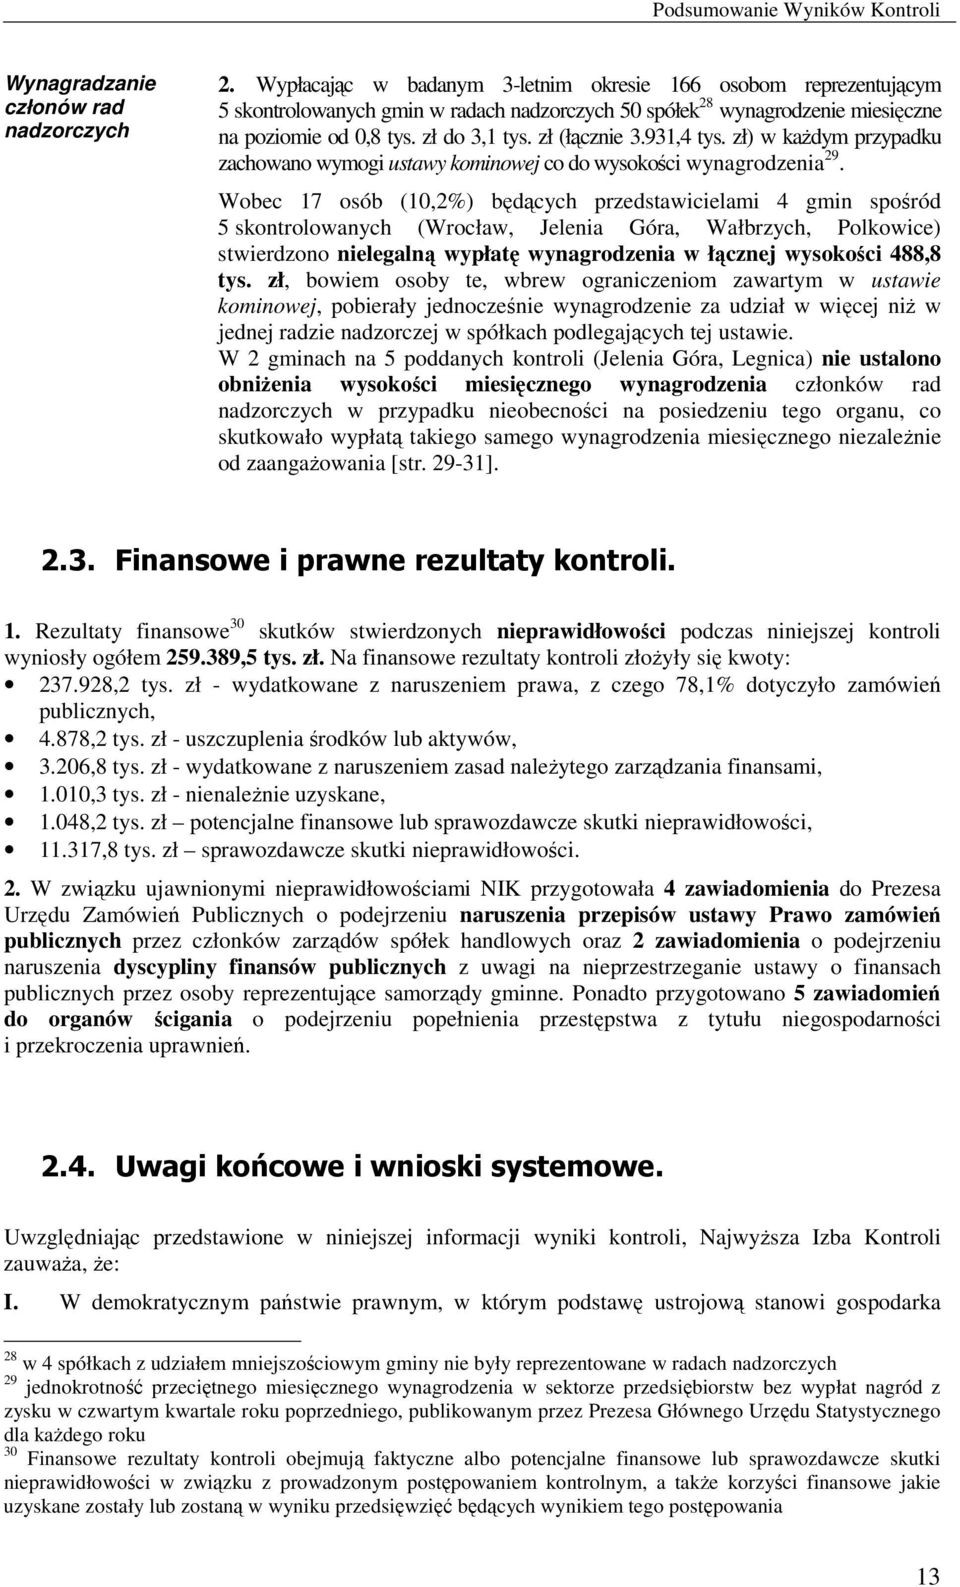 931,4 tys. zł) w kaŝdym przypadku zachowano wymogi ustawy kominowej co do wysokości wynagrodzenia 29.